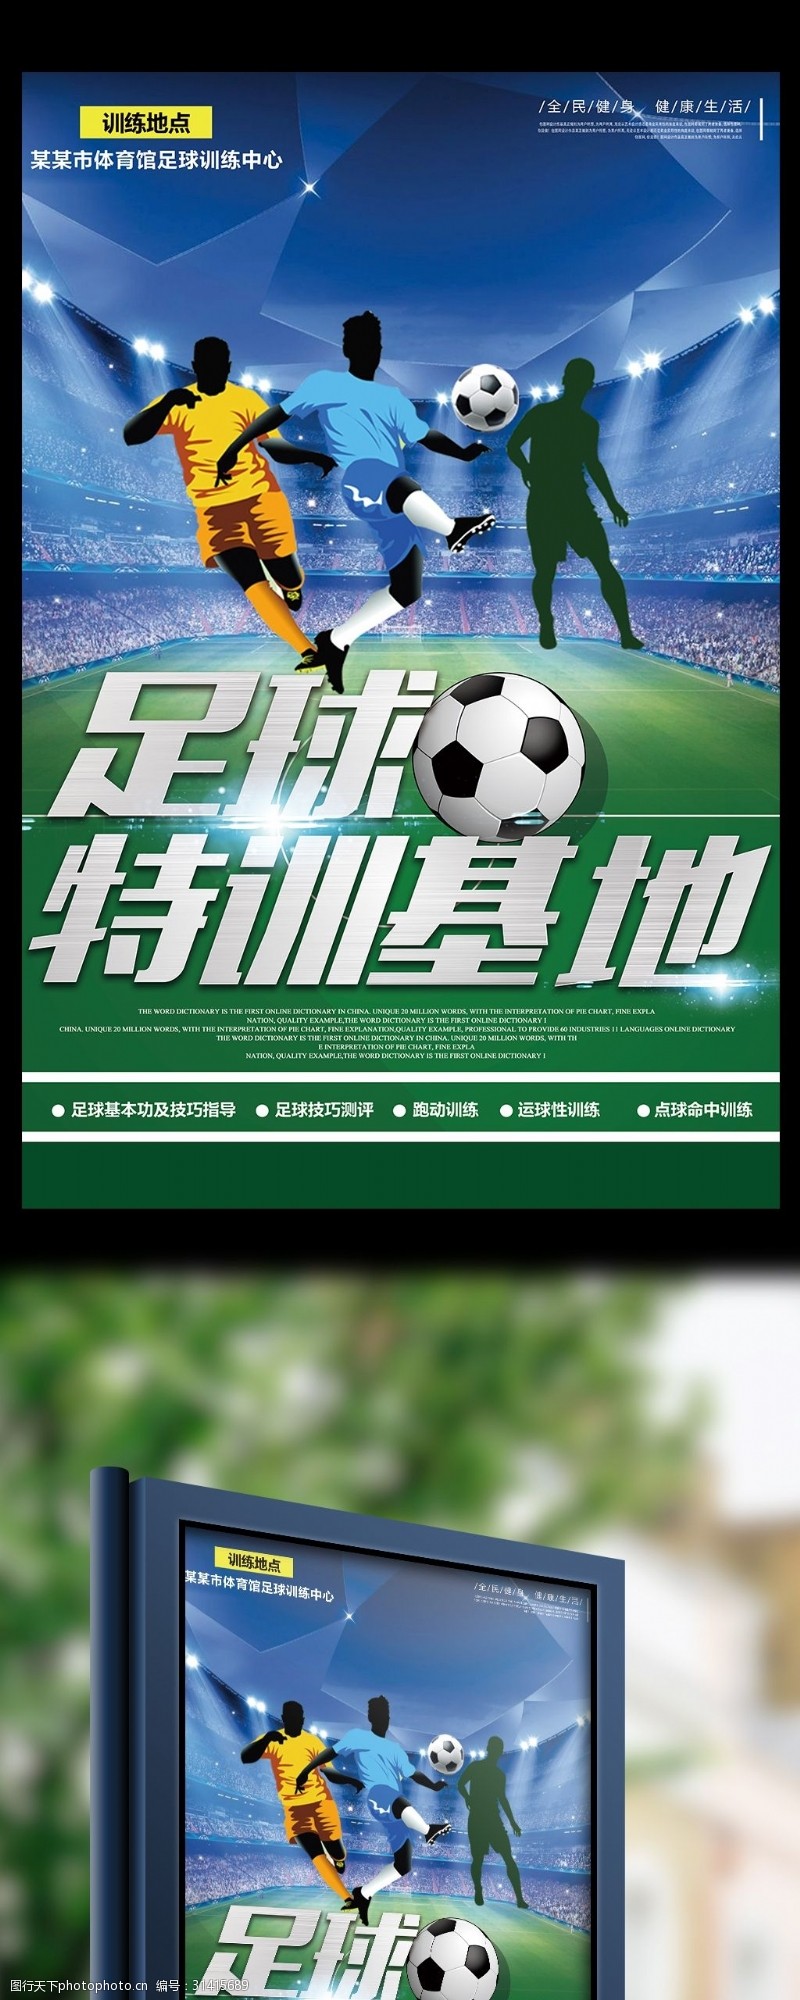 足球练习足球训练基地宣传海报